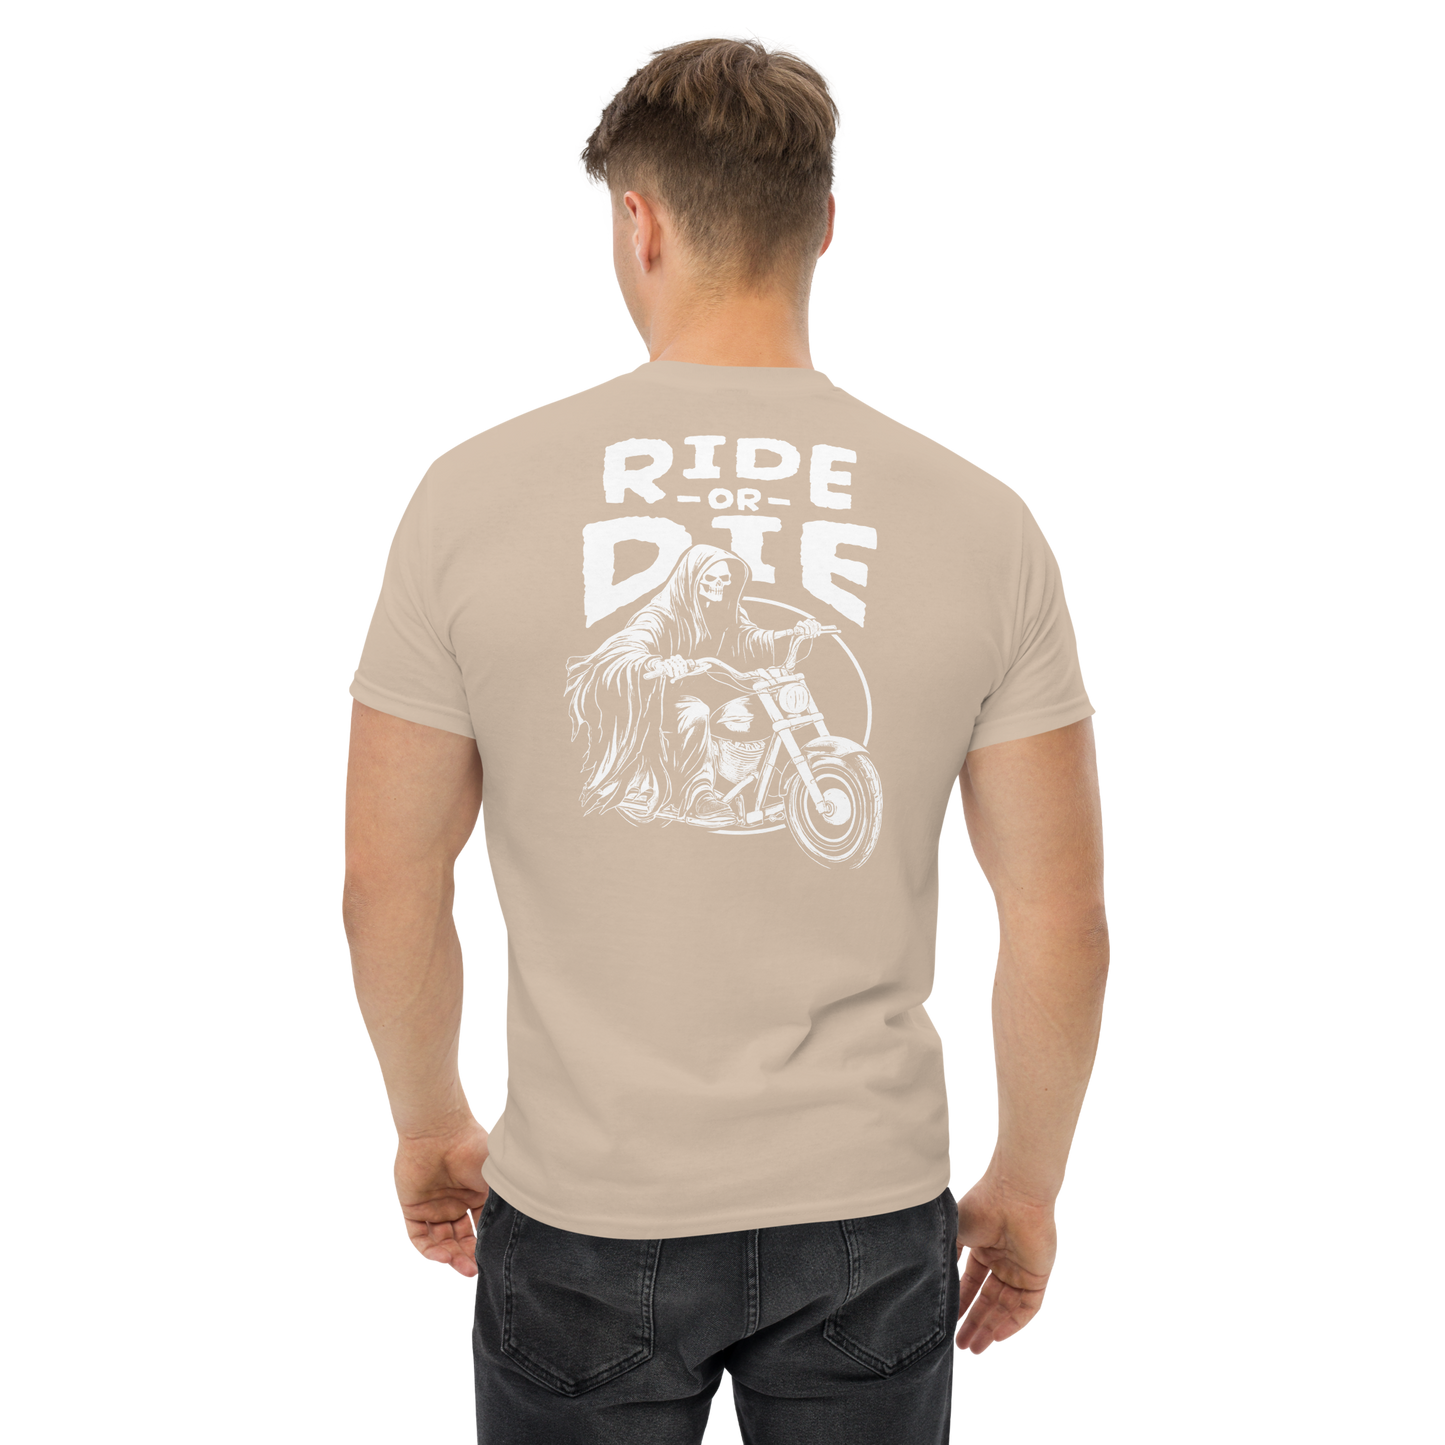 T-Shirt Ride or Die / Skull / Bike